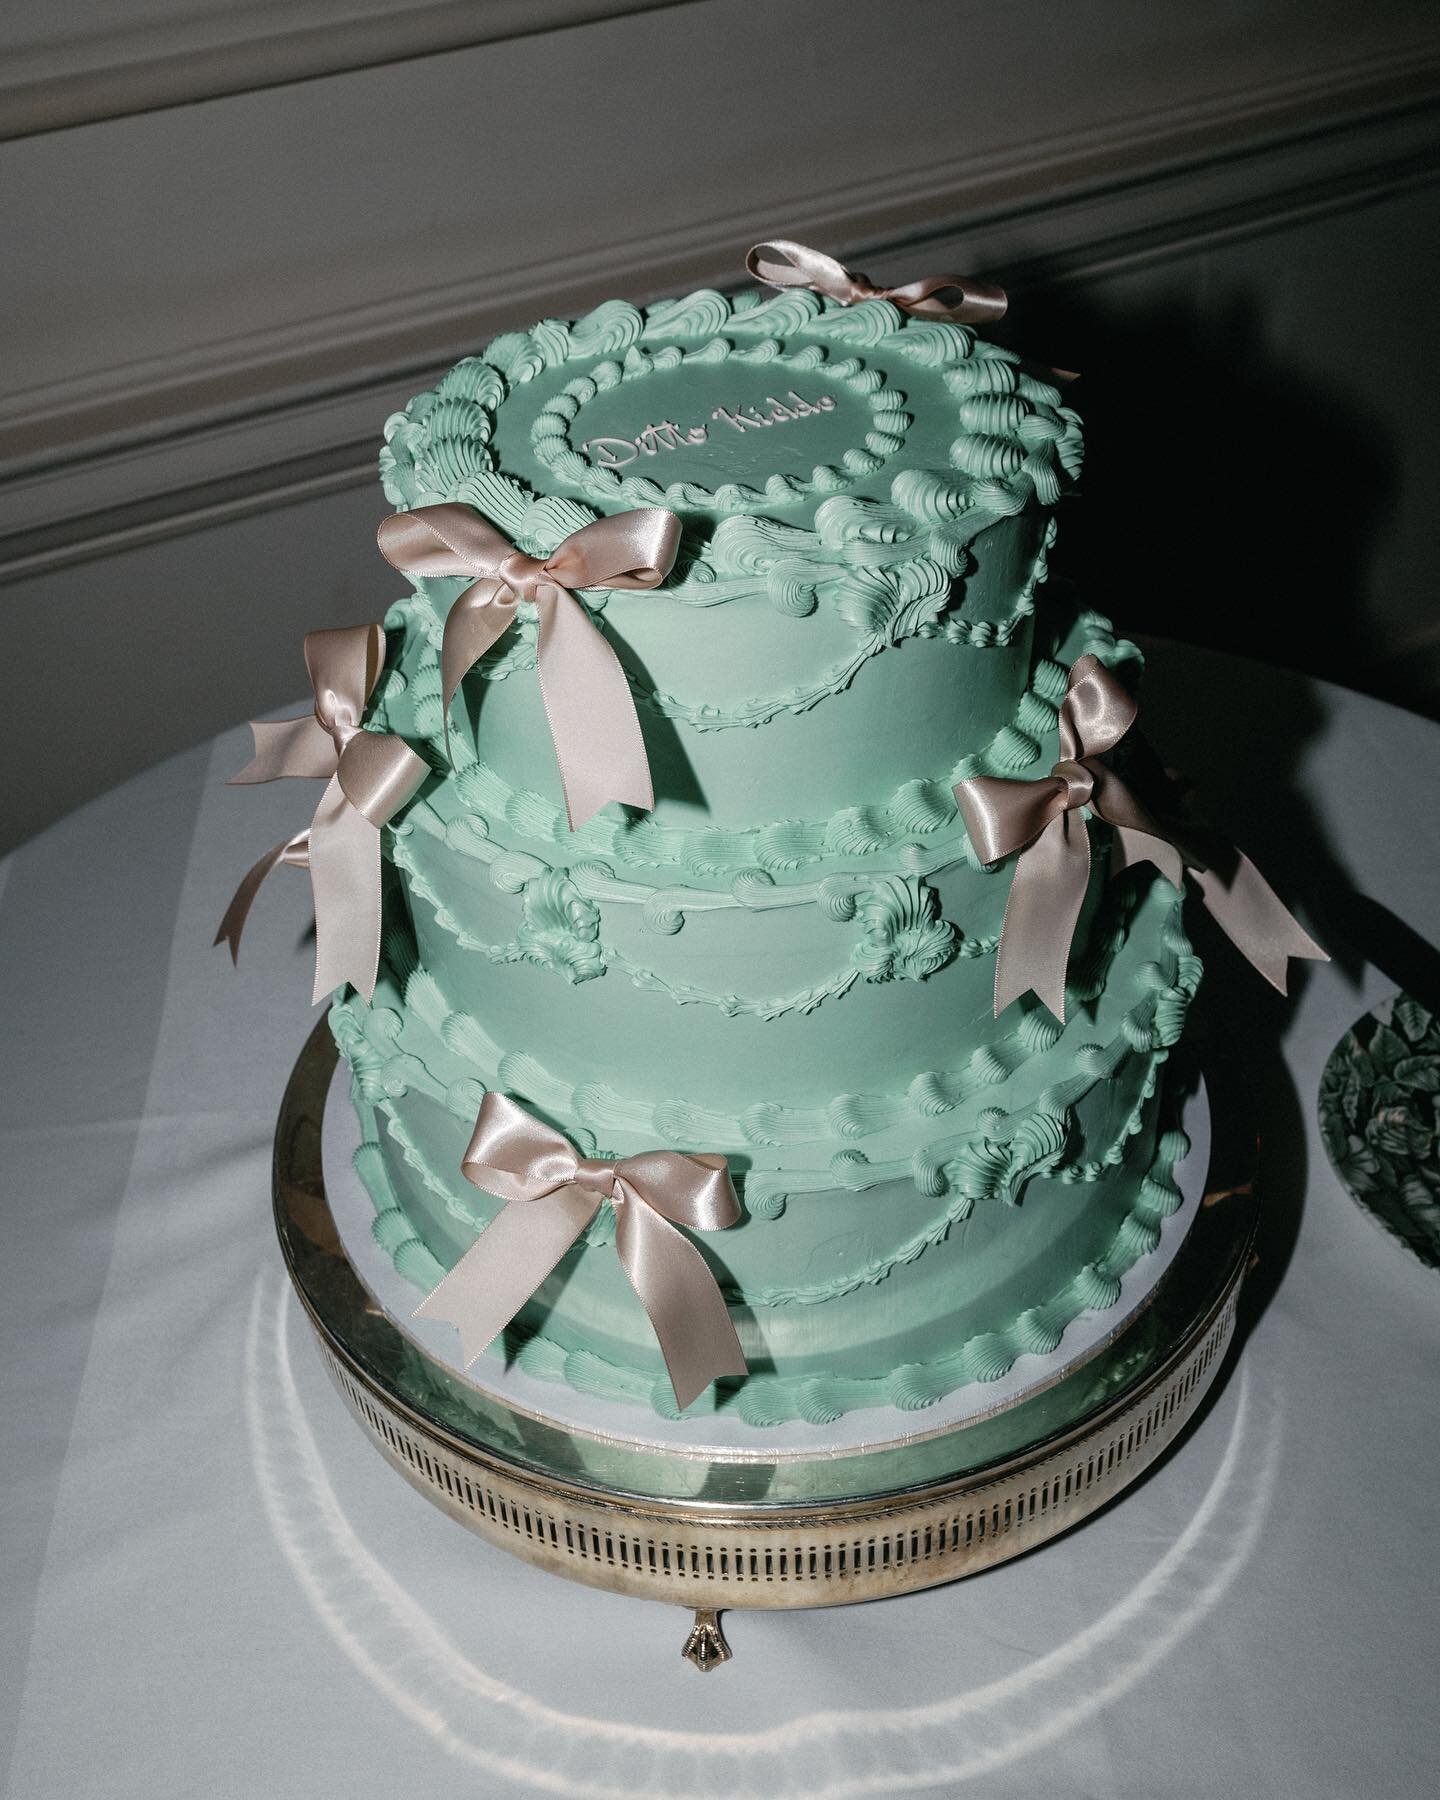 Close-up of Julia &amp; Edward&rsquo;s Wedding Cake 🎀

Venue: @thenedlondon 
Planing: @revelryeventsuk @liesl.lamare 
Photography: @emmawilder_photography 

#weddingcakebow#bows#greenweddingcake#thenedlondon#londonweddingcakes#eastlondonweddingcake#